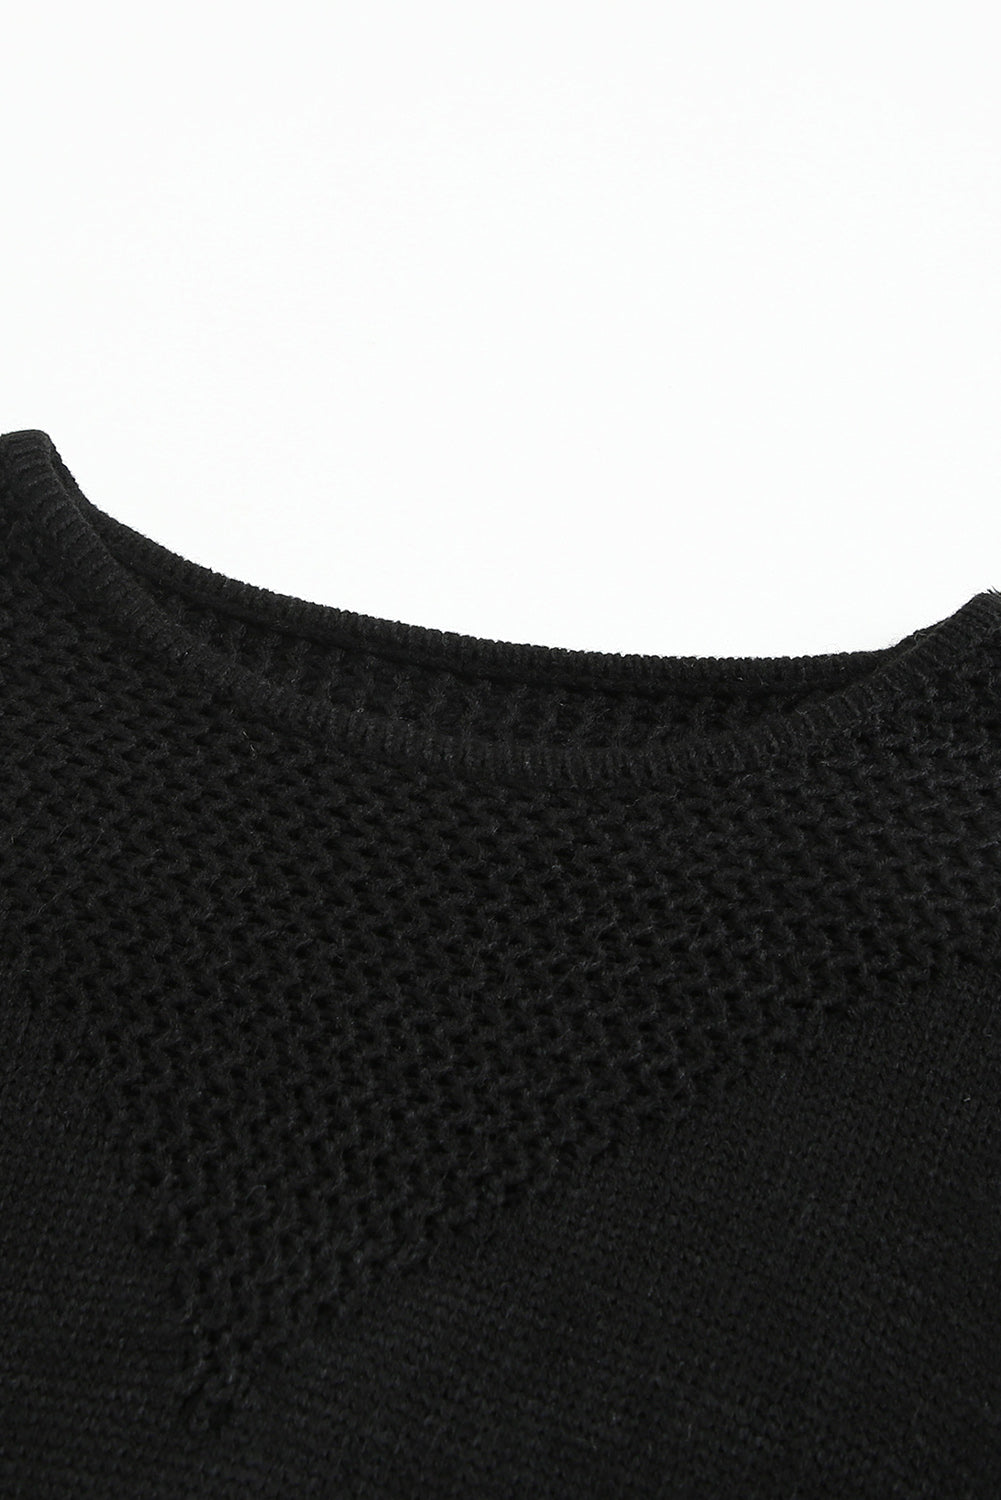 Maglione pullover Chevron bicolore nero